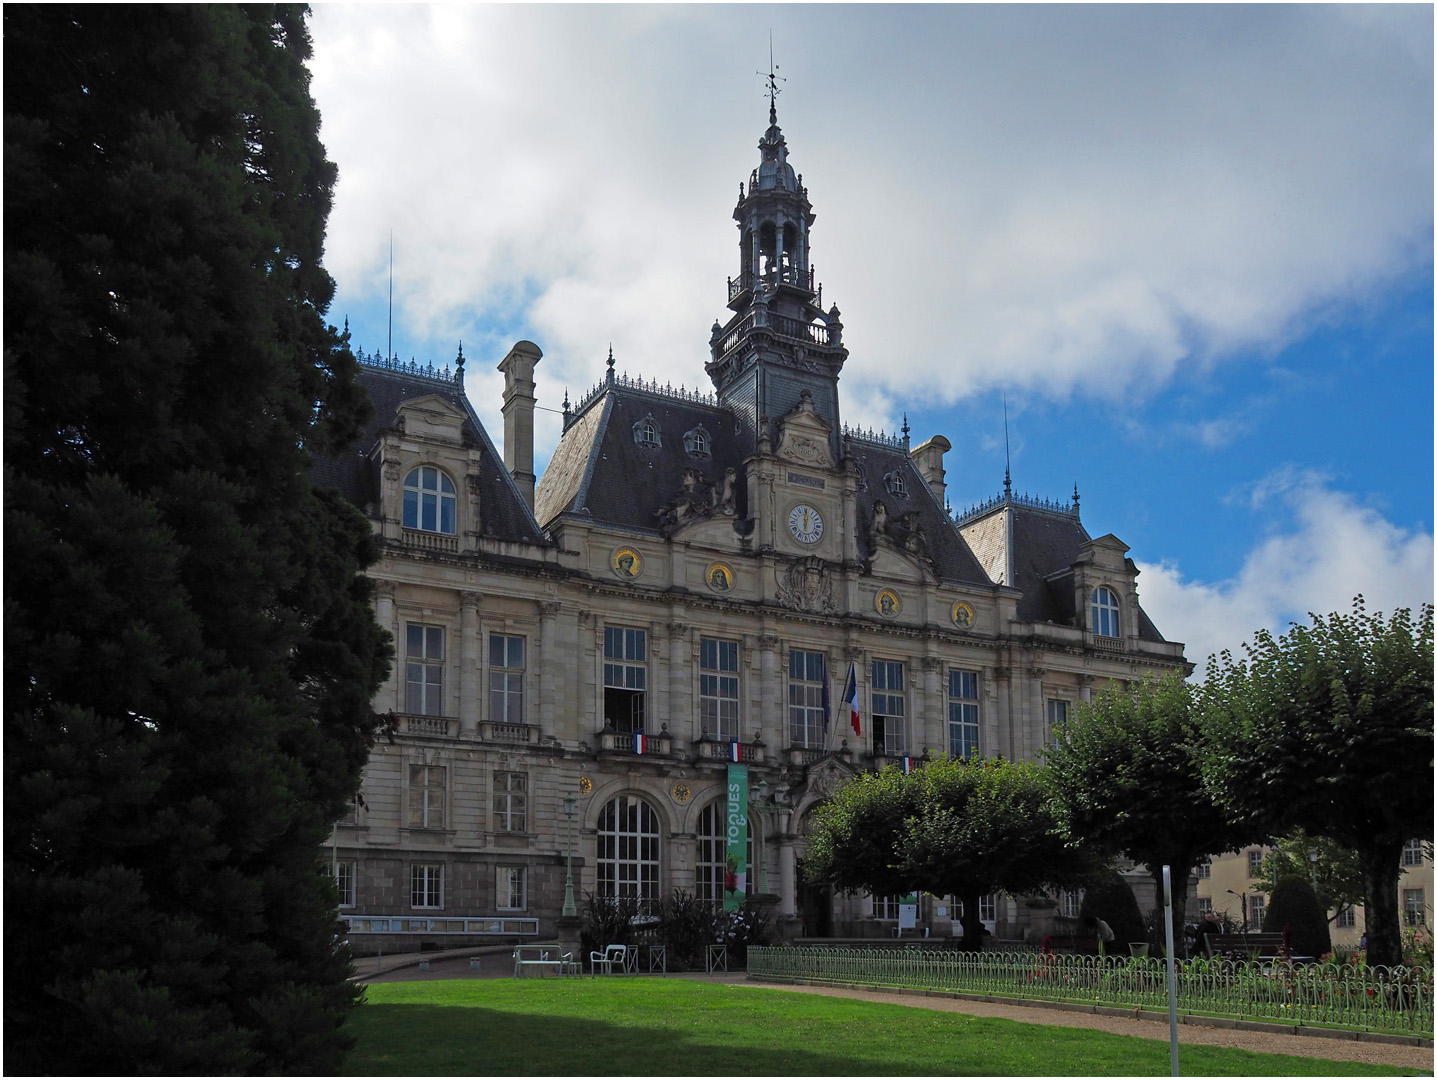 Limoges  --  L’Hôtel de ville